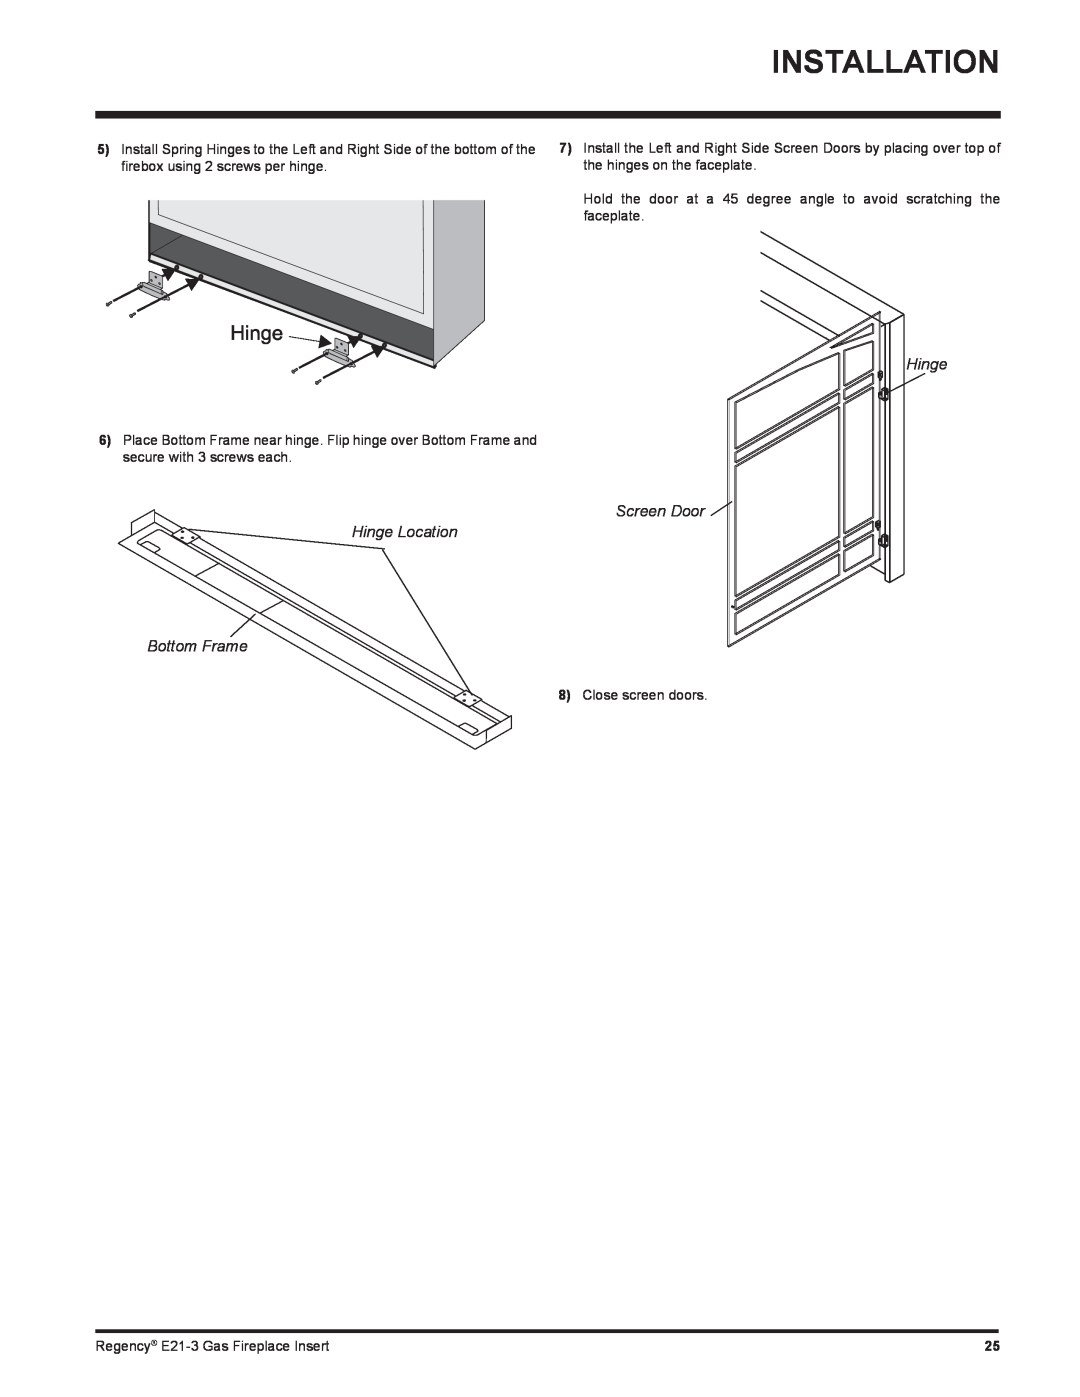 Regency E21-LP3, E21-NG3 installation manual Installation, Screen Door Hinge Location, Bottom Frame 